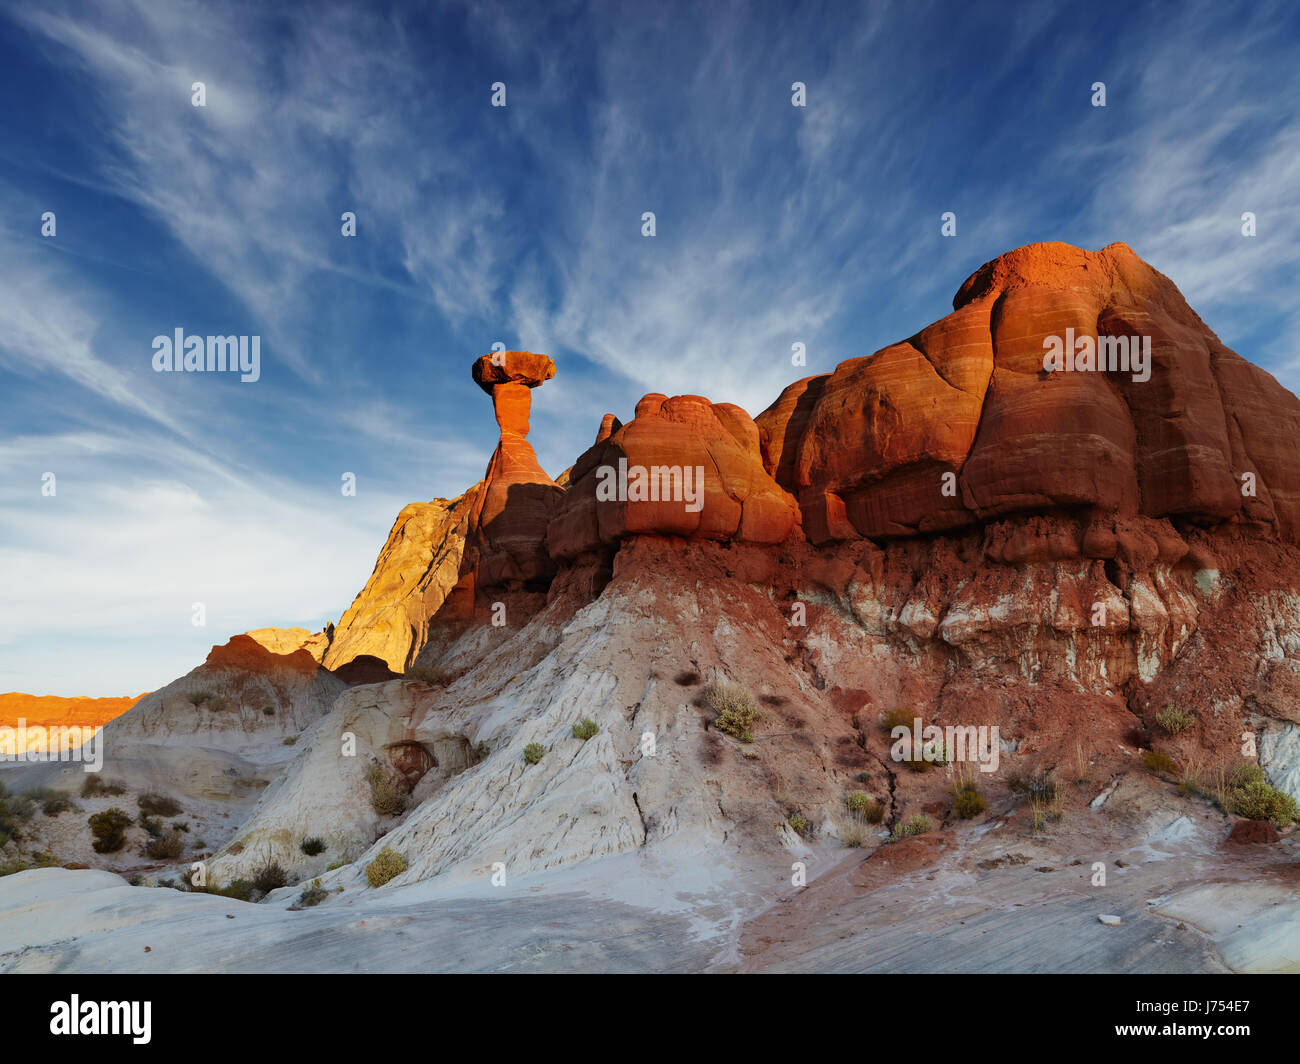 Toadstool Hoodoo rocher en forme de champignon incroyable du désert de l'Utah, USA Banque D'Images